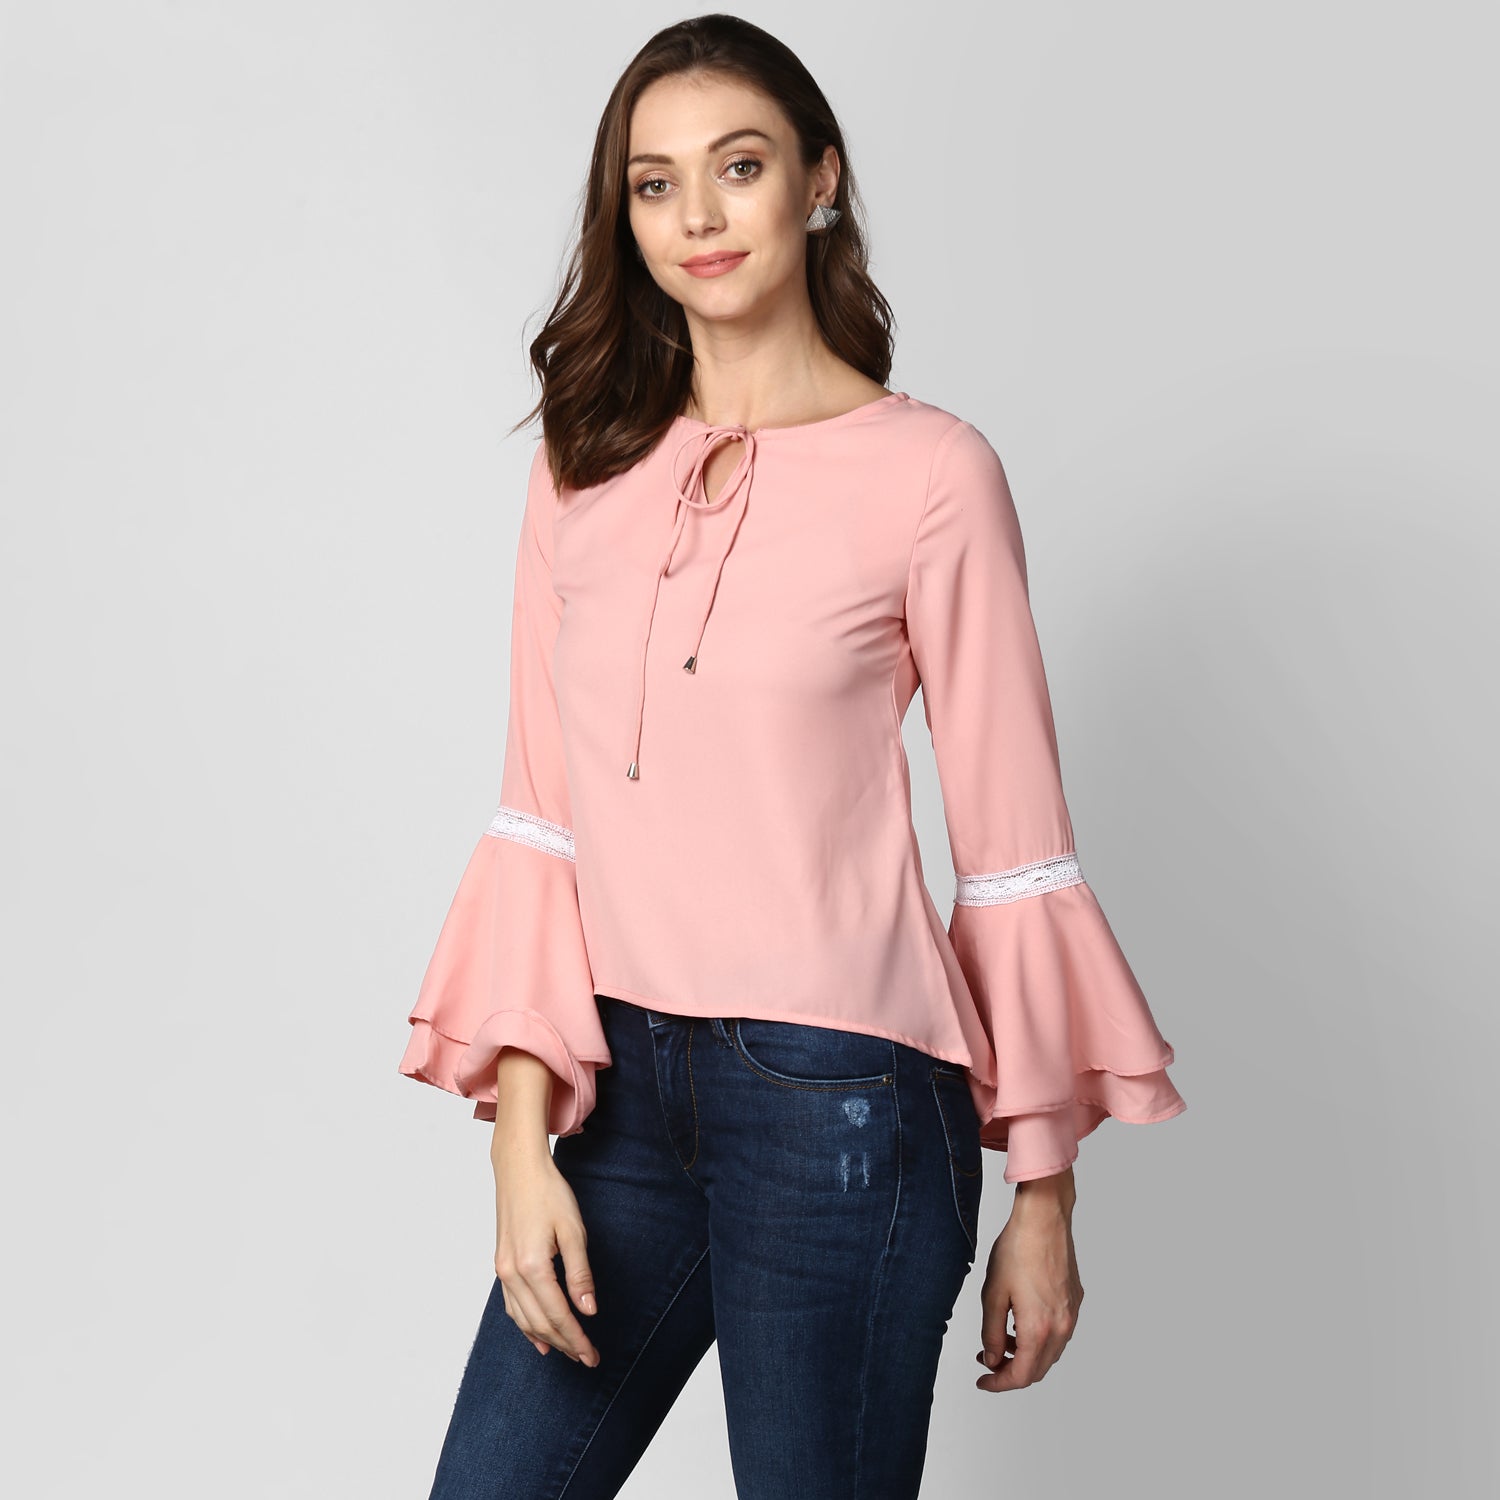 Women's Multi Tier Pink Top - StyleStone